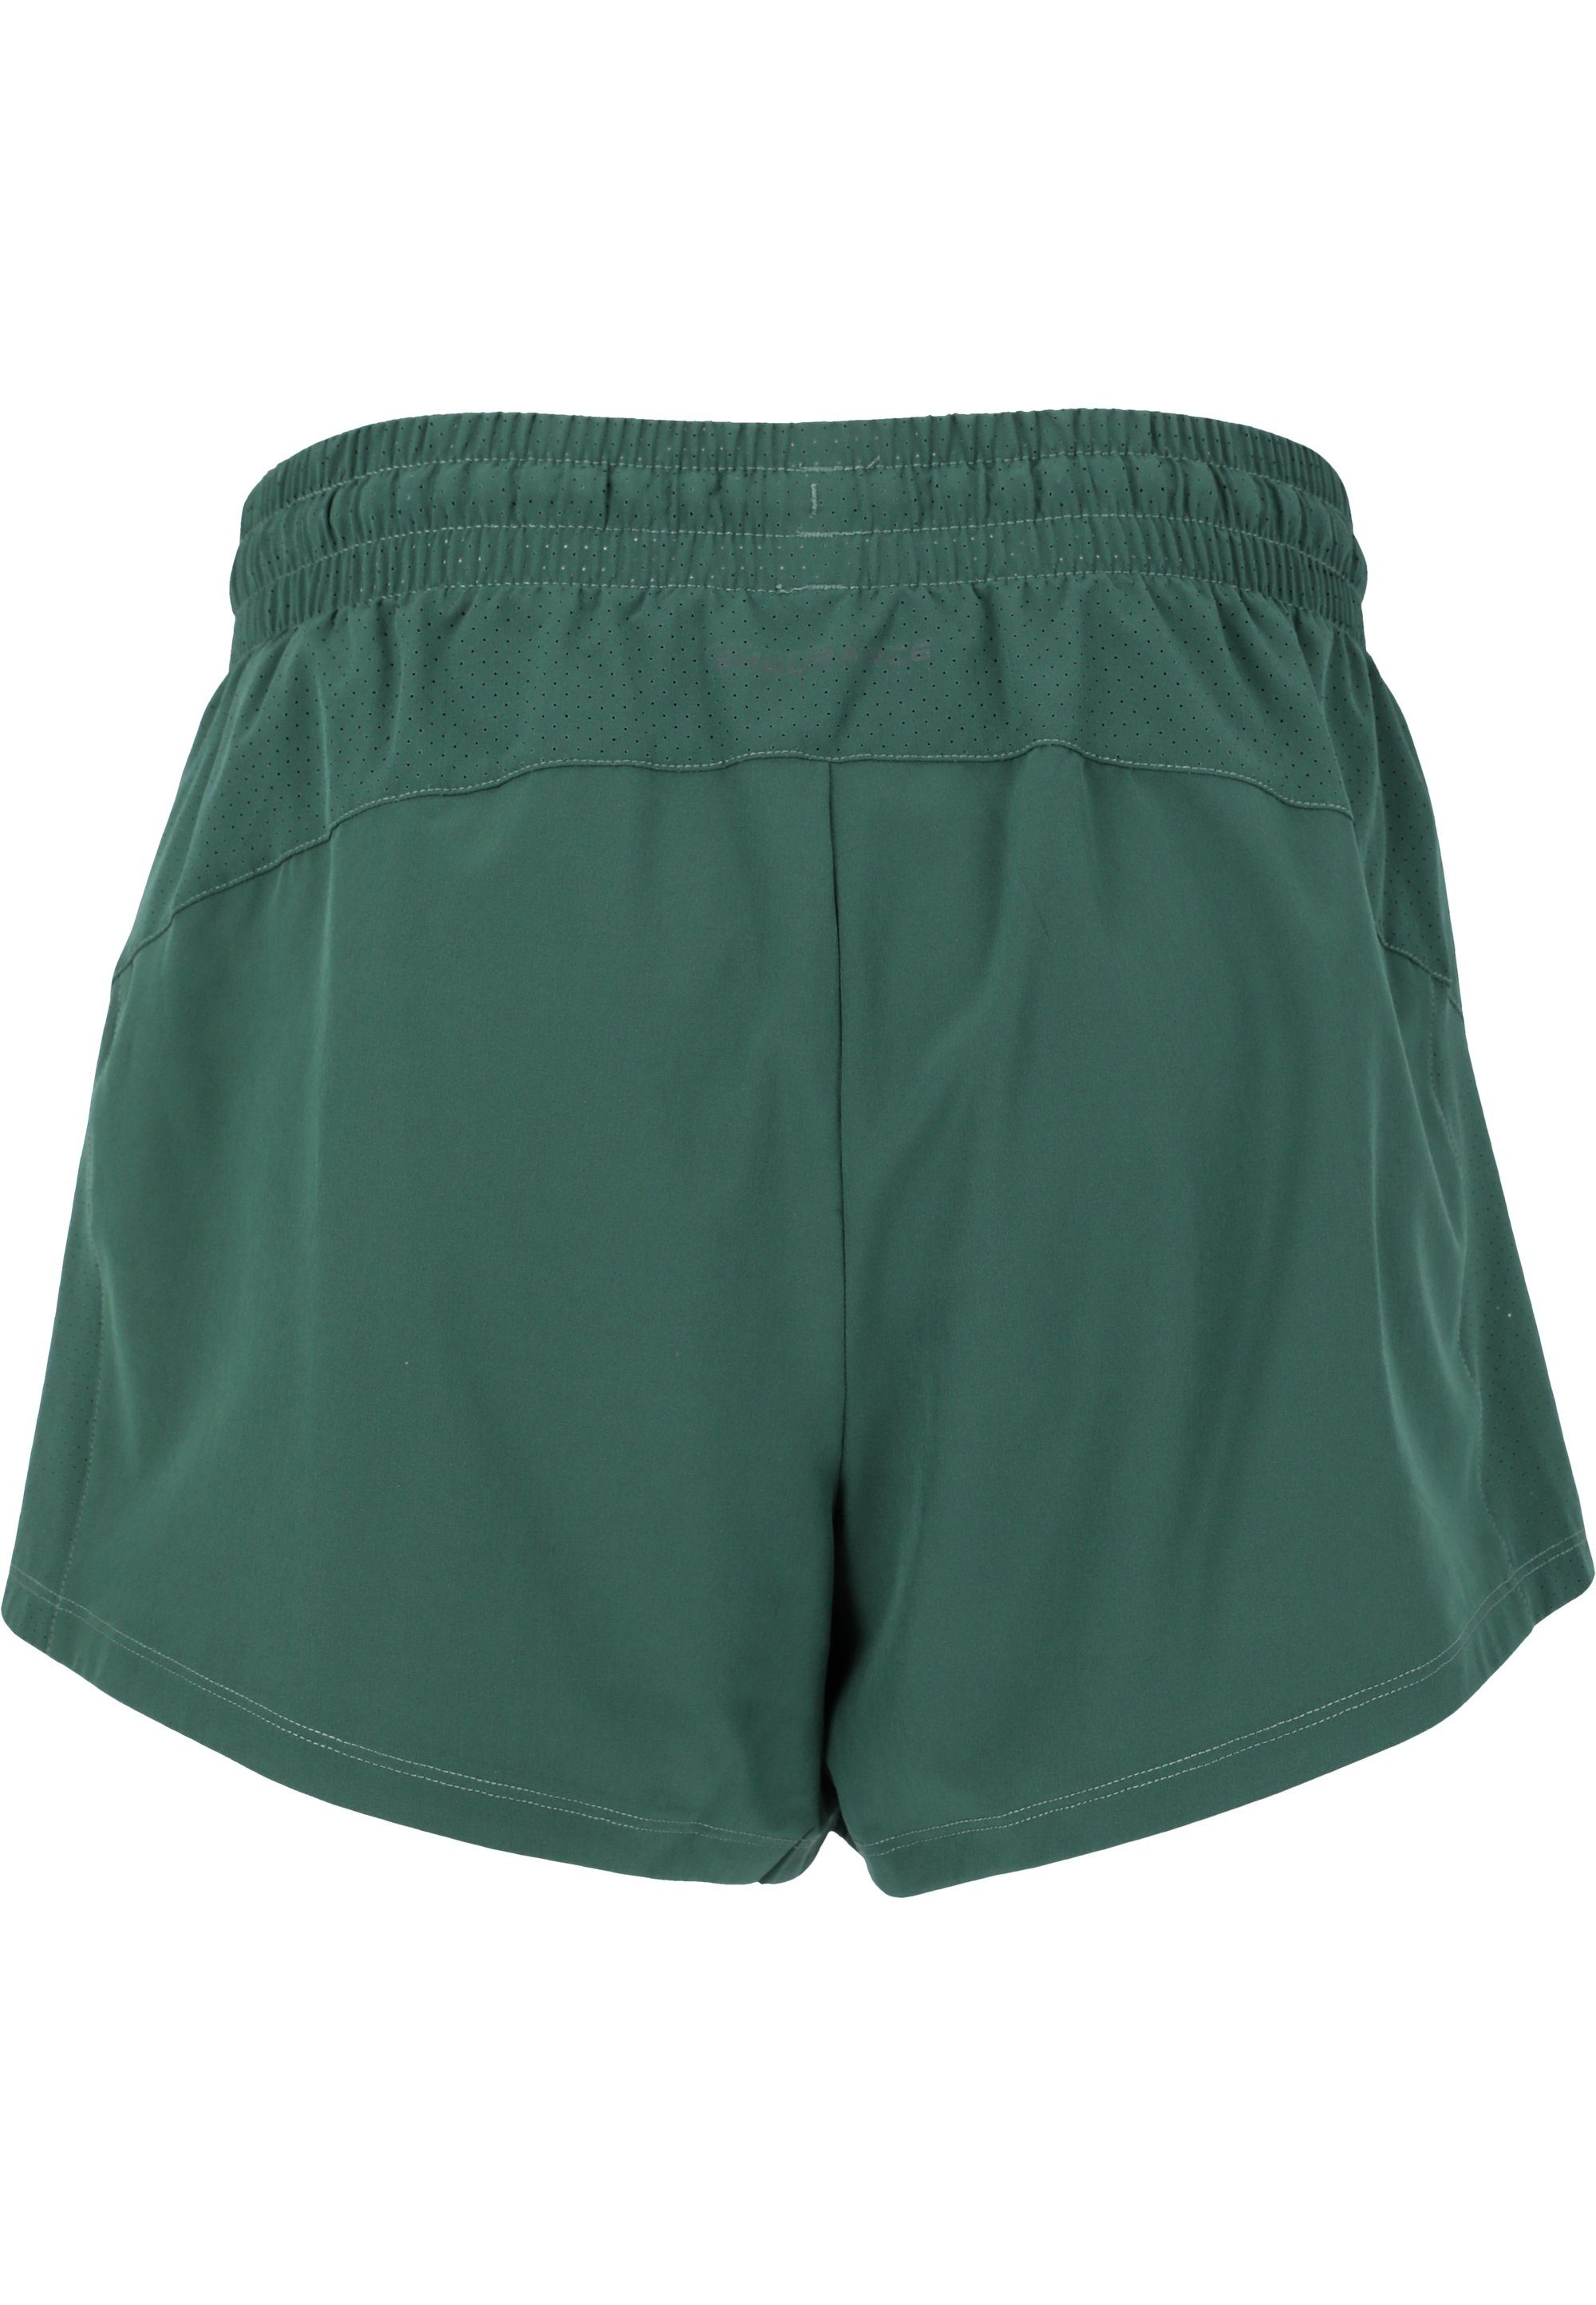 Taschen grün praktischen ENDURANCE Eslaire Shorts mit